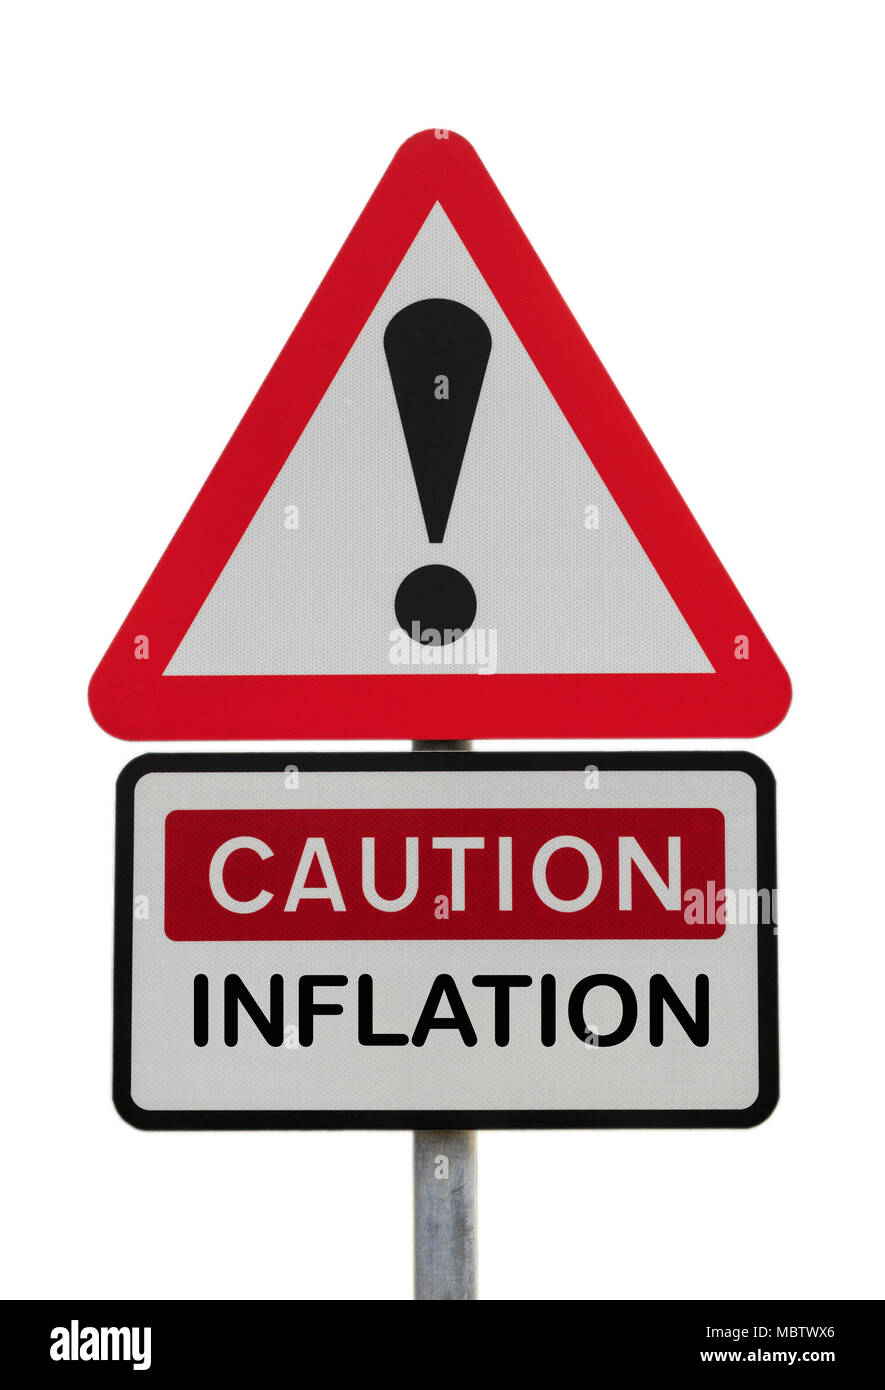 Dreieckige schild Warnung Vorsicht Inflation mit Ausrufezeichen finanzielle Zukunft Konzept zu veranschaulichen. Großbritannien, Großbritannien, Europa Stockfoto